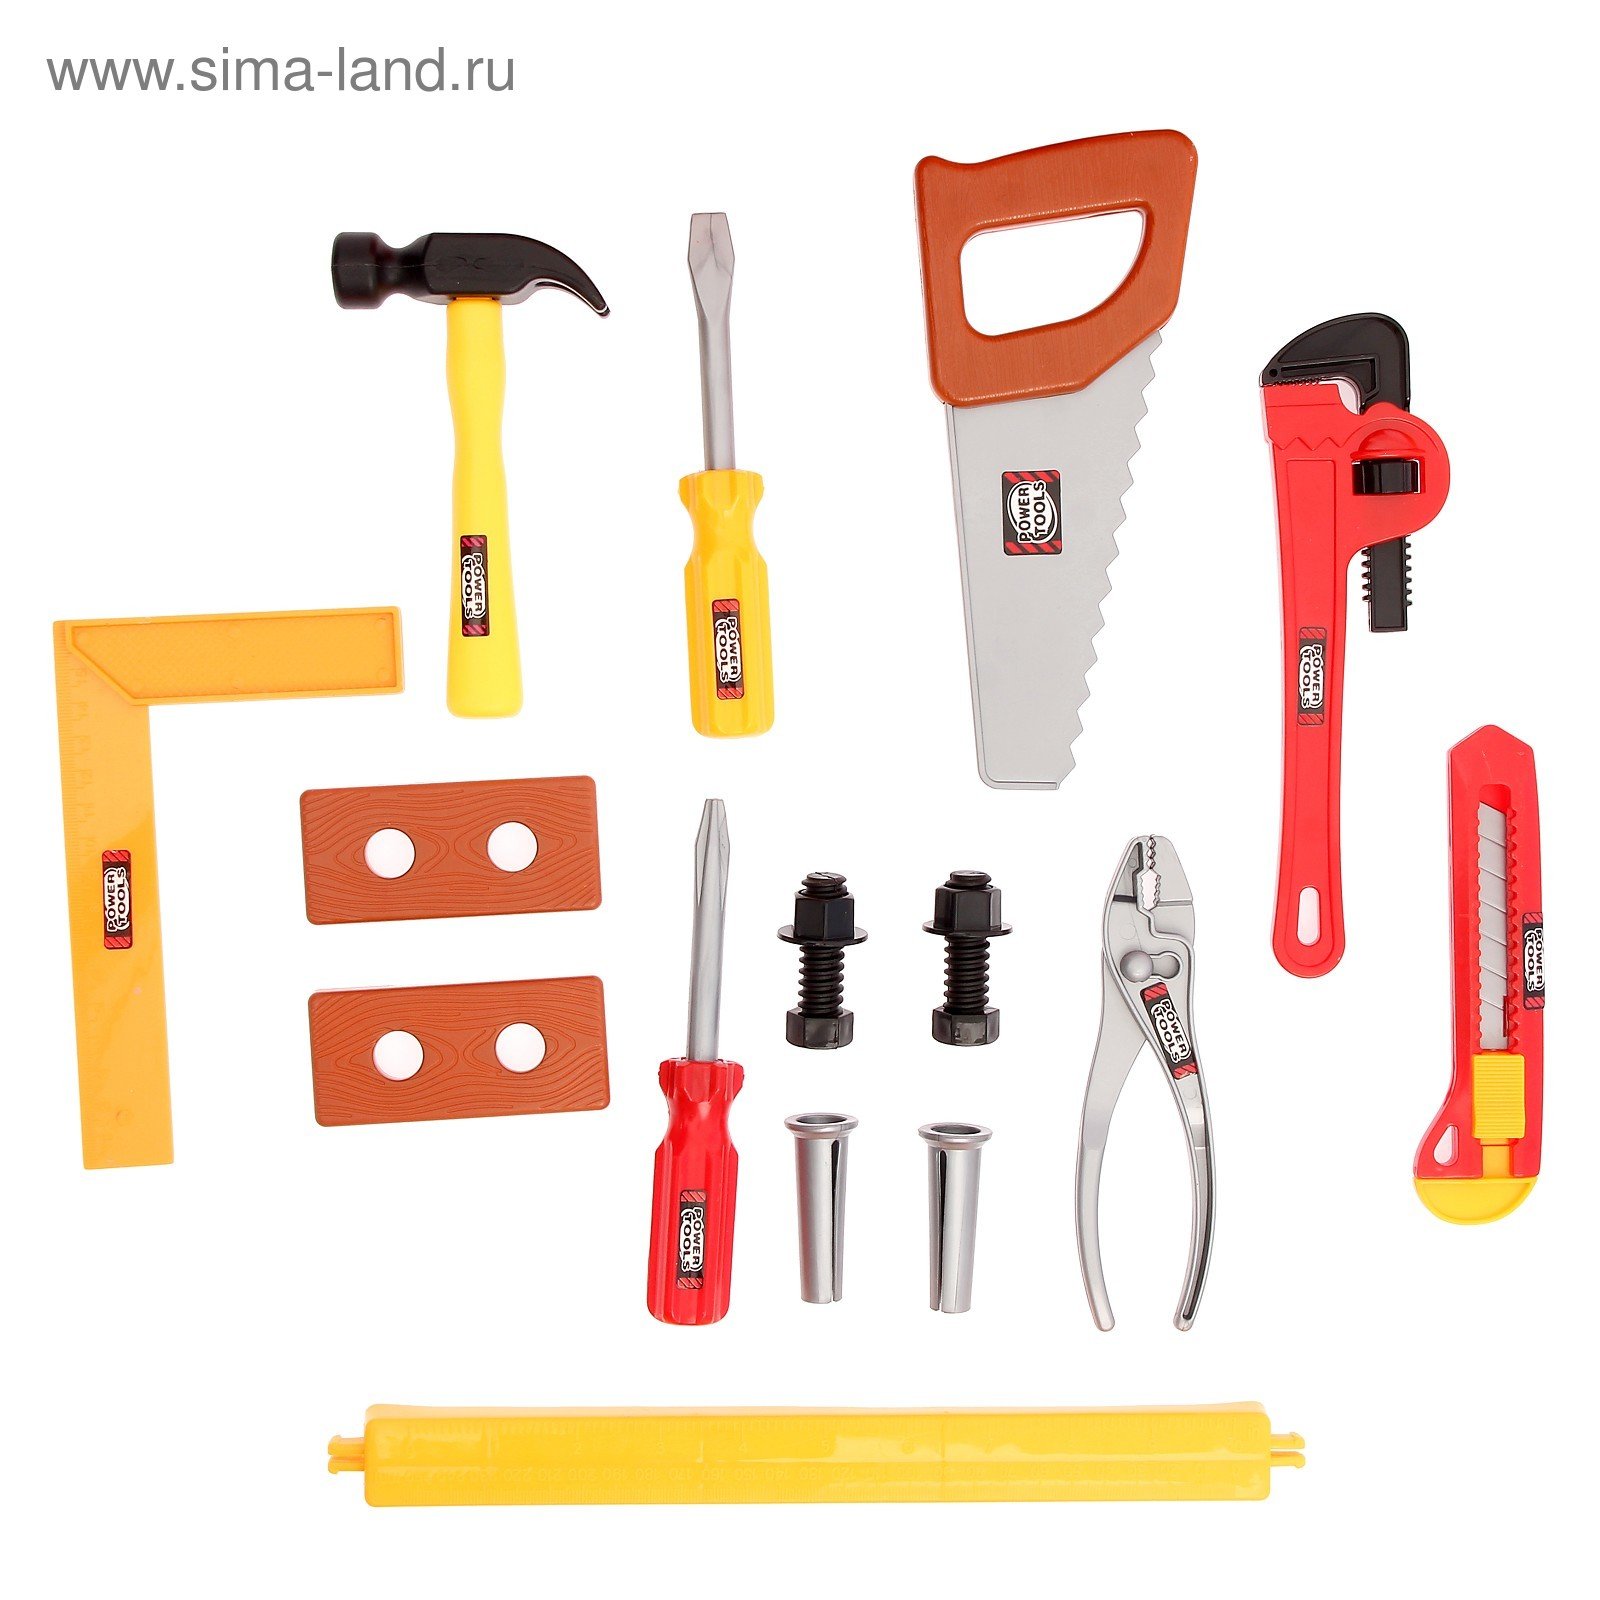 Сайт про инструменты. Строительные инструменты. Ручной инструмент. Инструменты плотника. Ручной строительный инструмент.